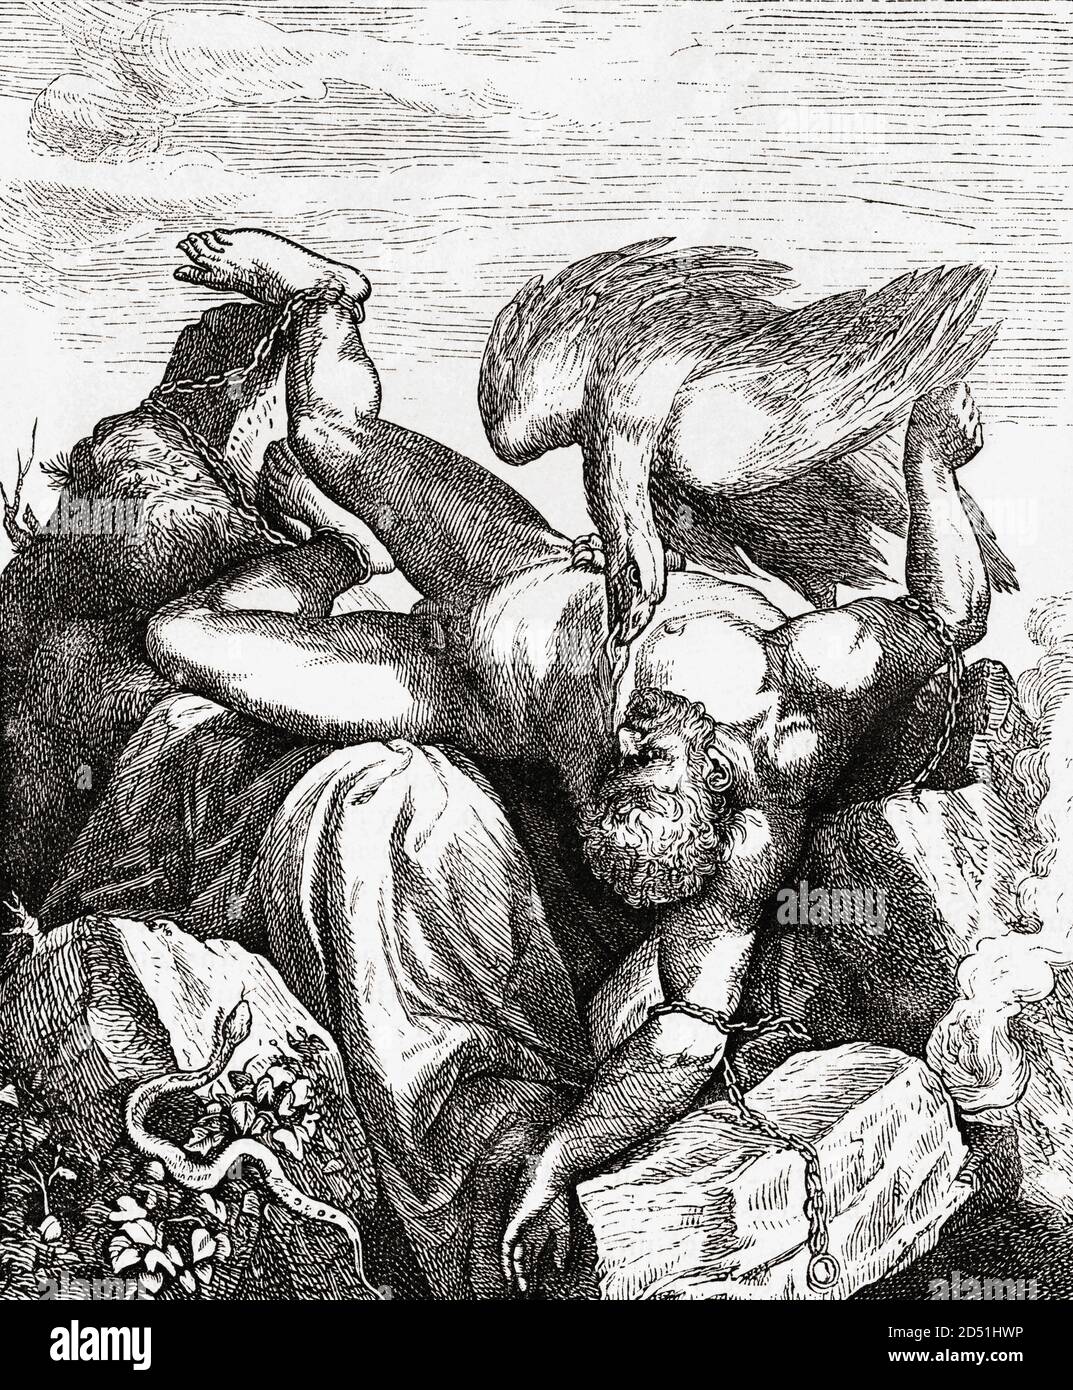 Prometheus. Alte griechische Figur, die den Göttern trotzte, indem sie der Menschheit Feuer gab. Dafür wurde er bestraft, indem er an einen Felsen gebunden wurde. Jeden Tag wurde ein Adler geschickt, um seine Leber zu essen, die in der Nacht wieder aufwuchs. Von dieser ewigen Qual wurde er von Herkules befreit. Nach einem Stich des niederländischen Künstlers Cornelis Cort, nach einem Gemälde von Tizian. Stockfoto